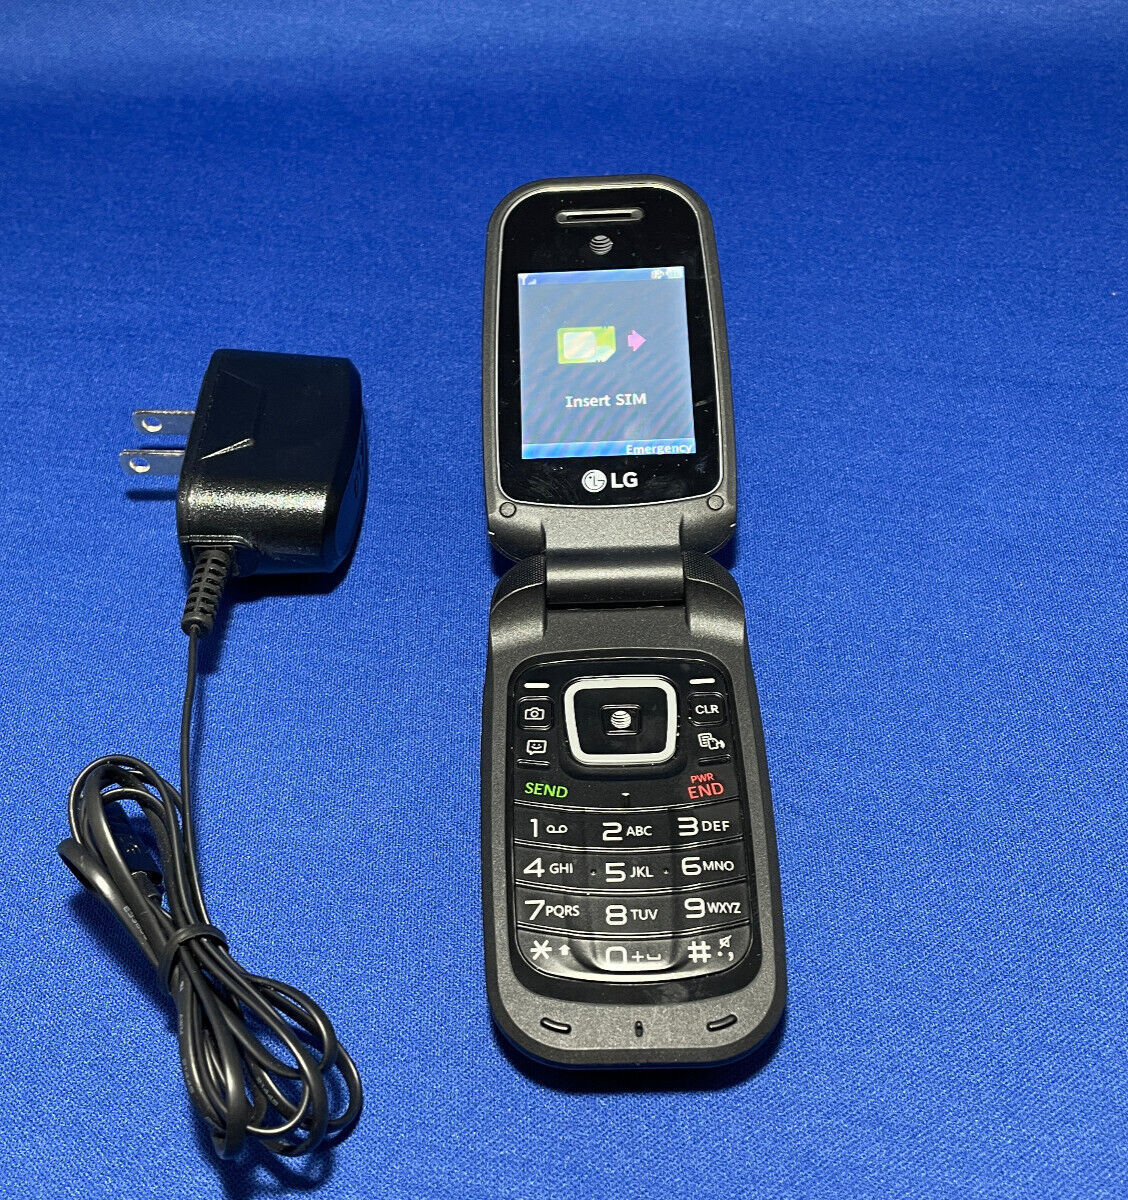 Primary image for LG B470 Black Flip Phone no box or manual (Original owner!)